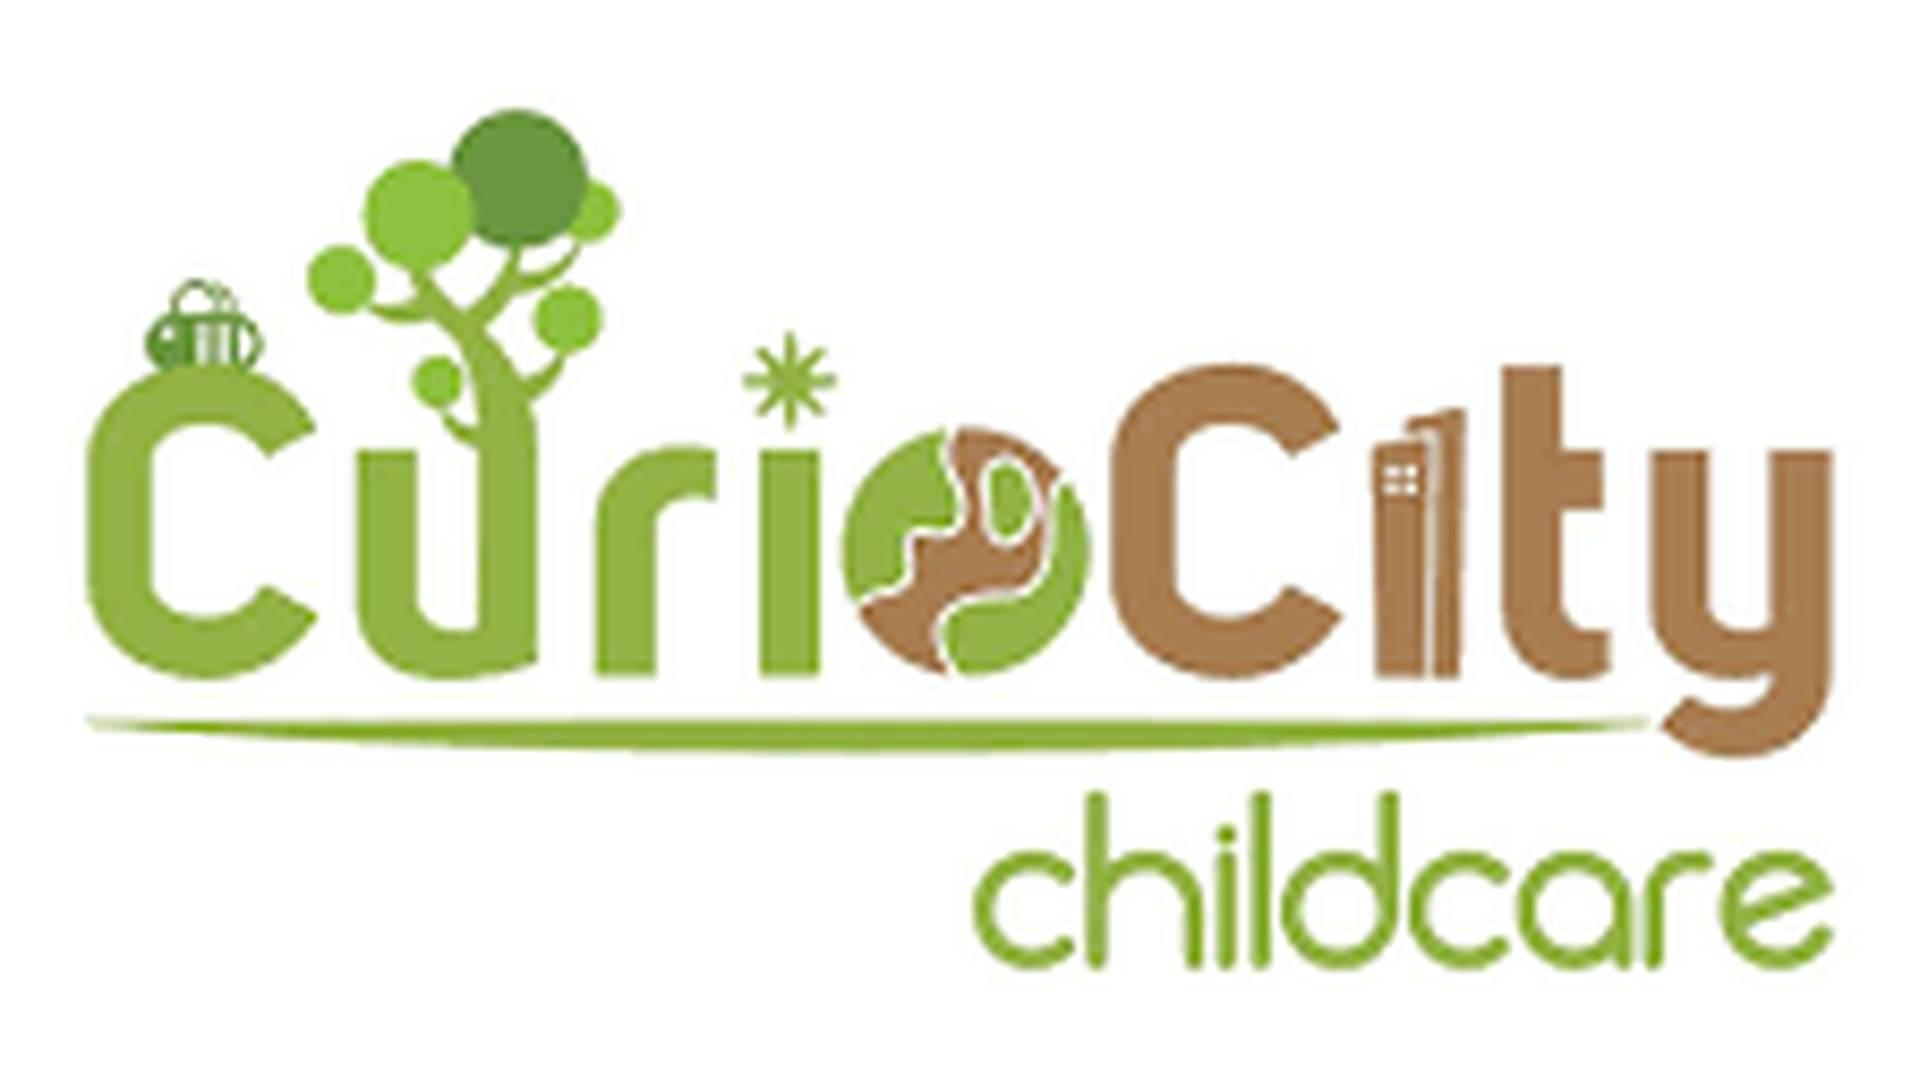 CurioCity Childcare photo